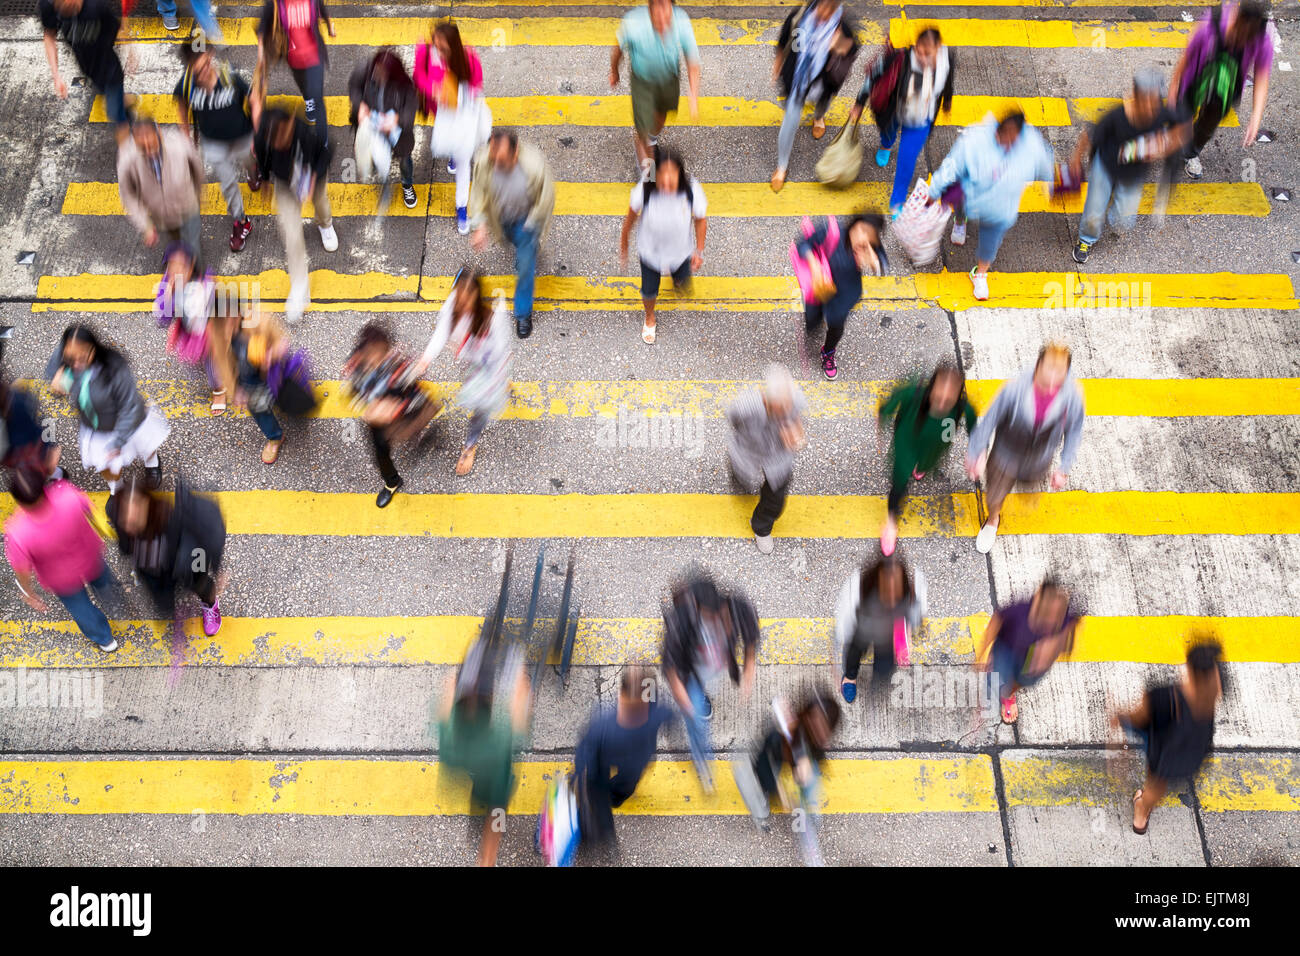 Hong Kong, Hong Kong SAR -November 13, 2014: Crowded pedestrian crossing during rush hour in Hong Kong. Stock Photo